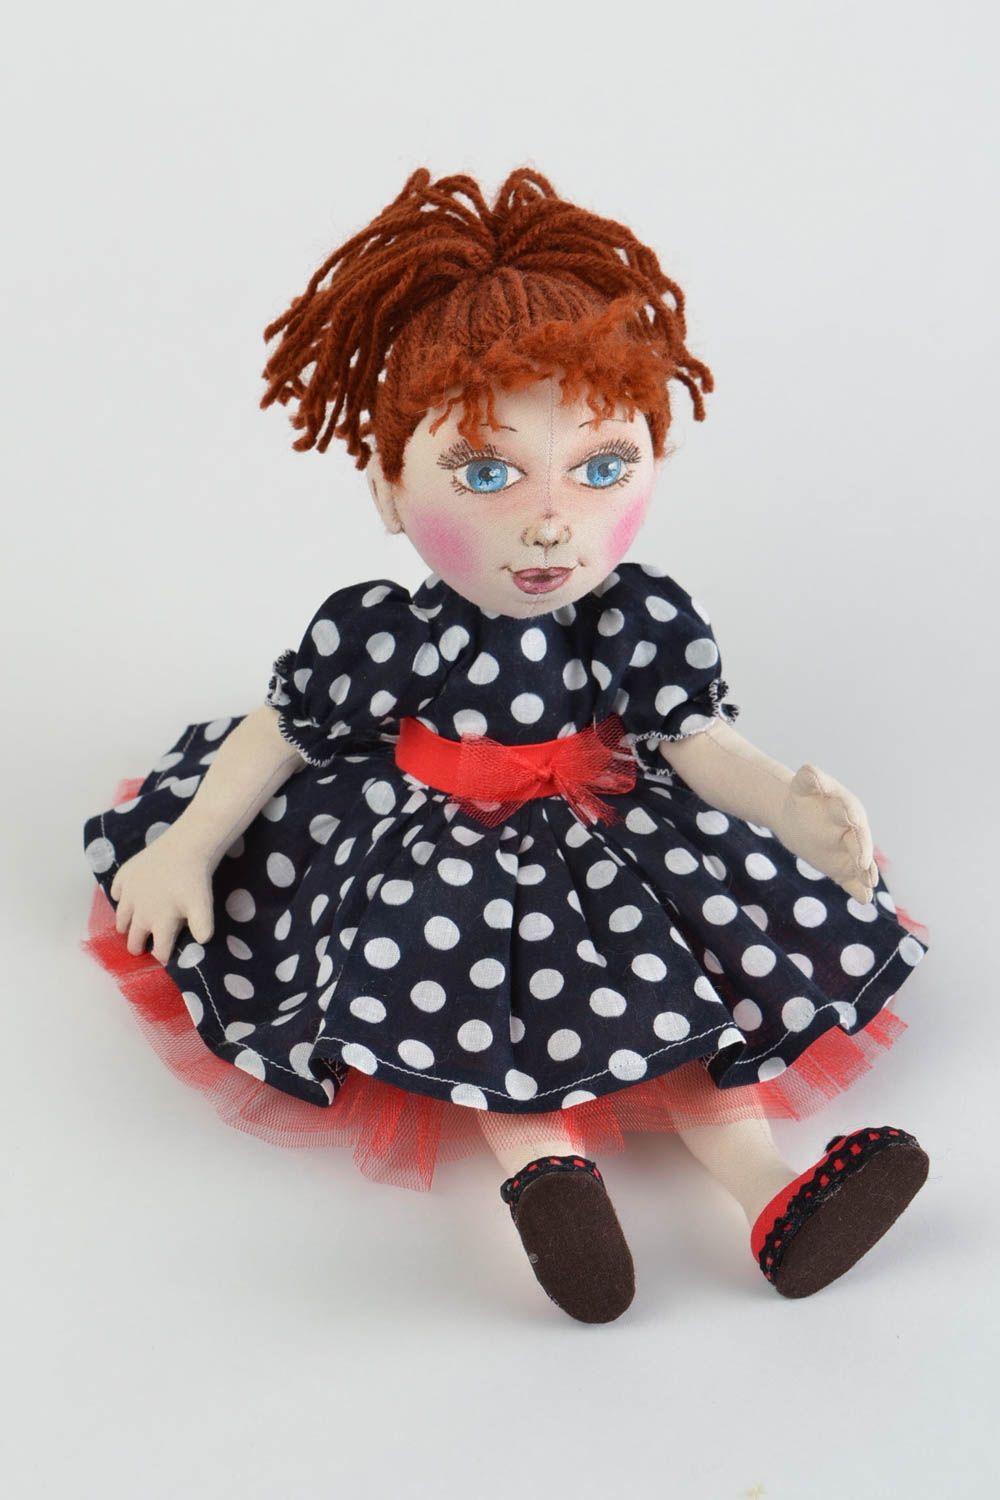 Кукла для интерьера и детей тканевая мягкая игрушка ручной работы Жасмин фото 1